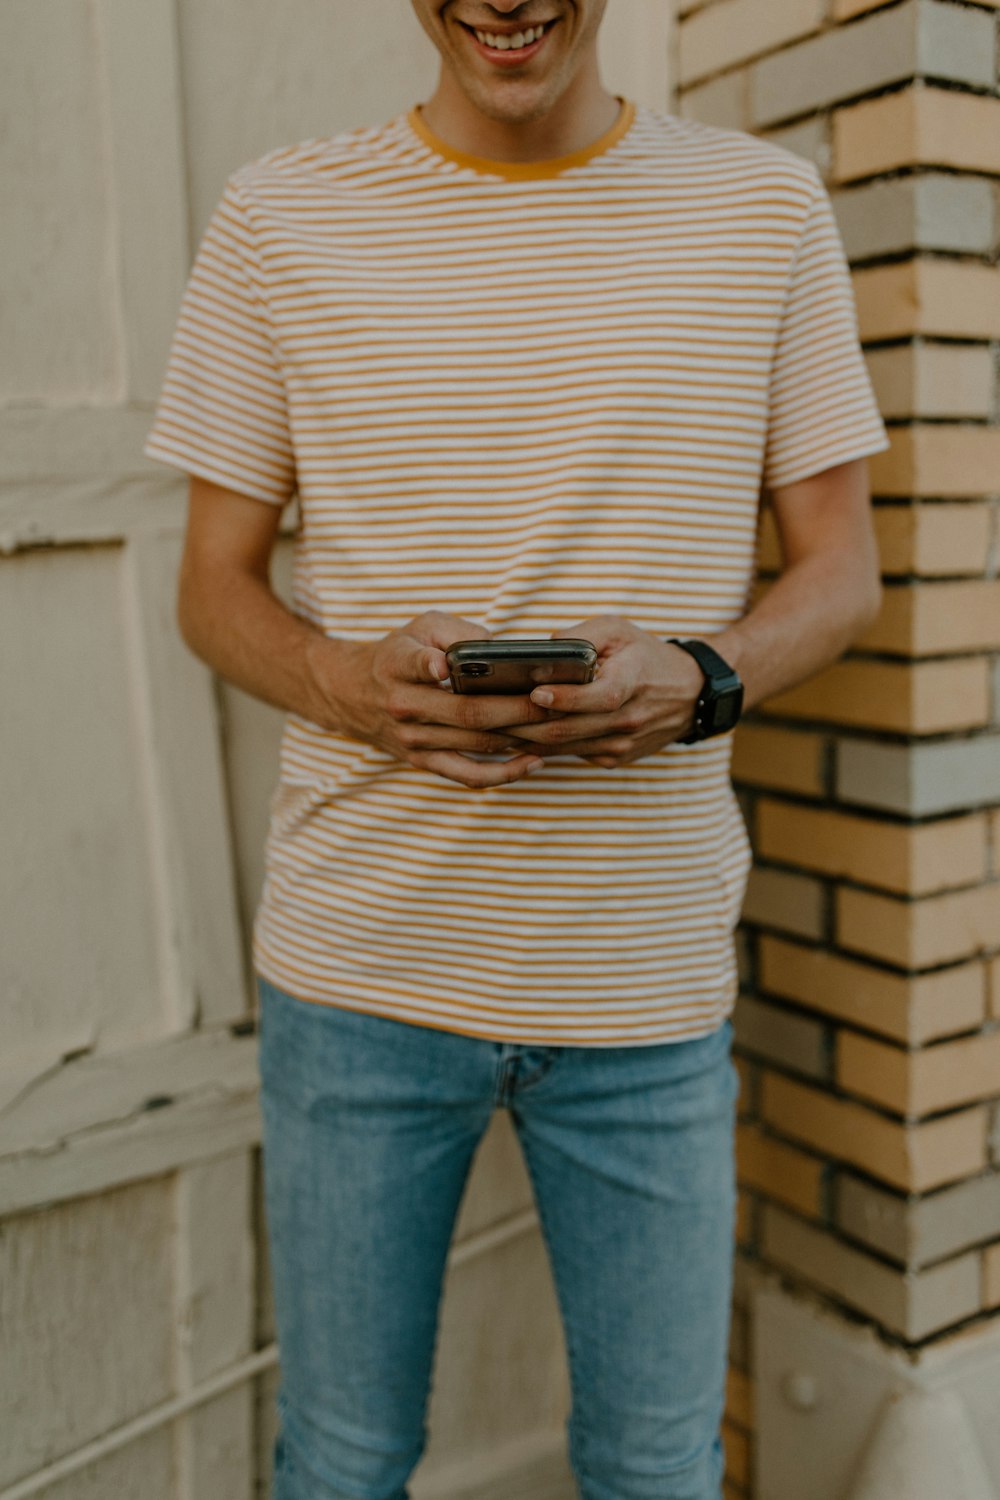 흰색과 검은색 줄무늬 셔츠와 파란색 데님 청바지를 입은 남자가 검은색 스마트폰을 들고 있다